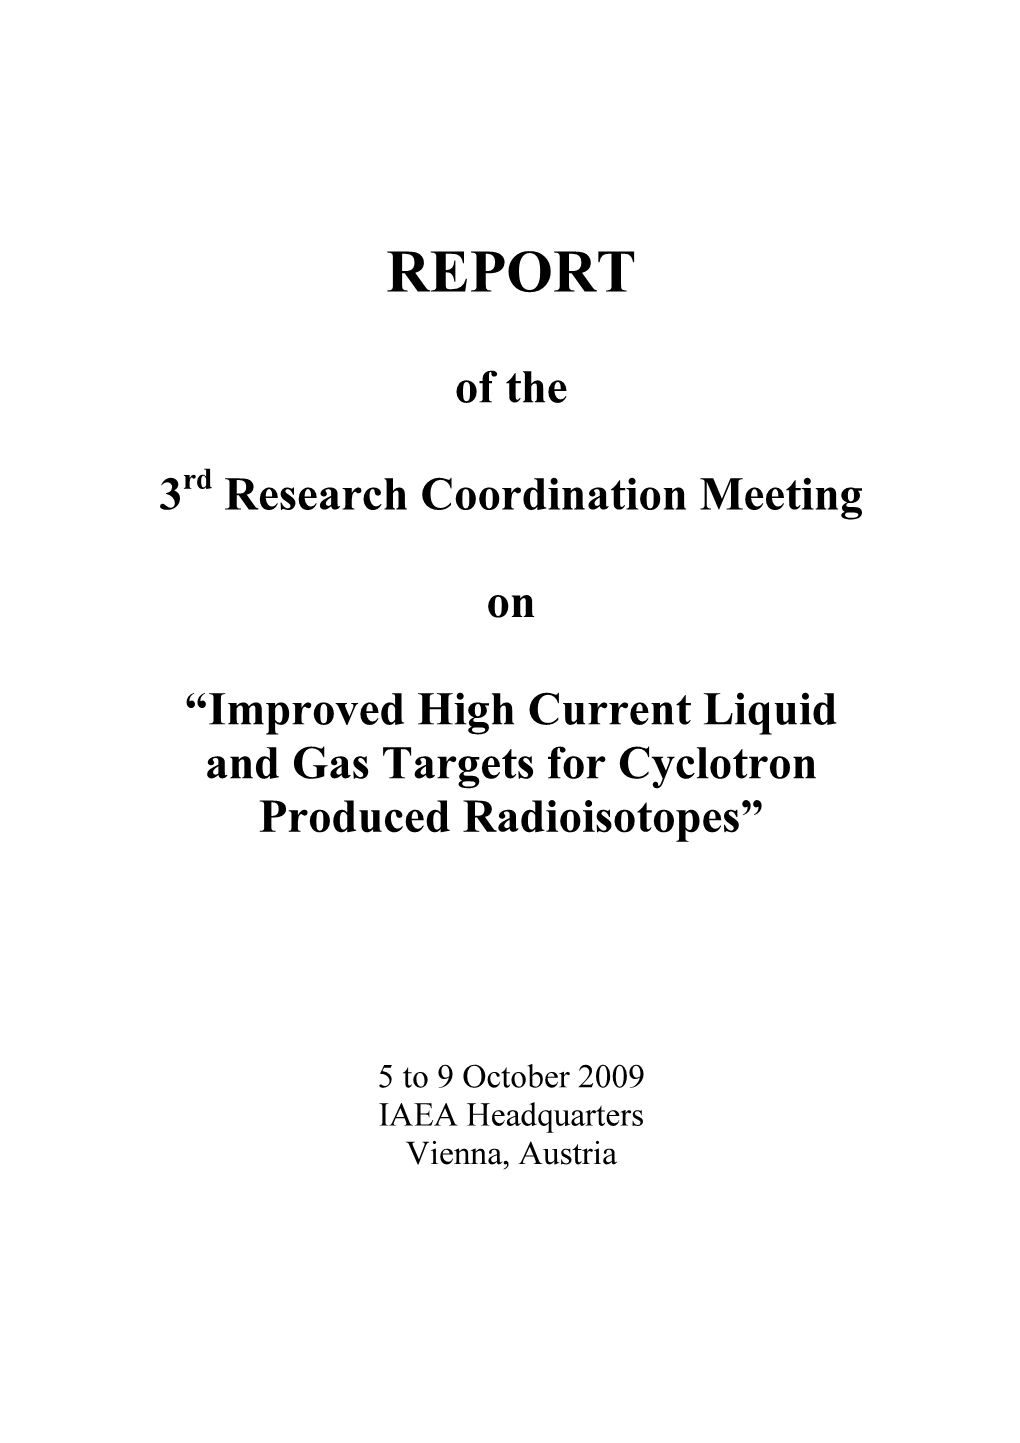 Meeting Report (Pdf)